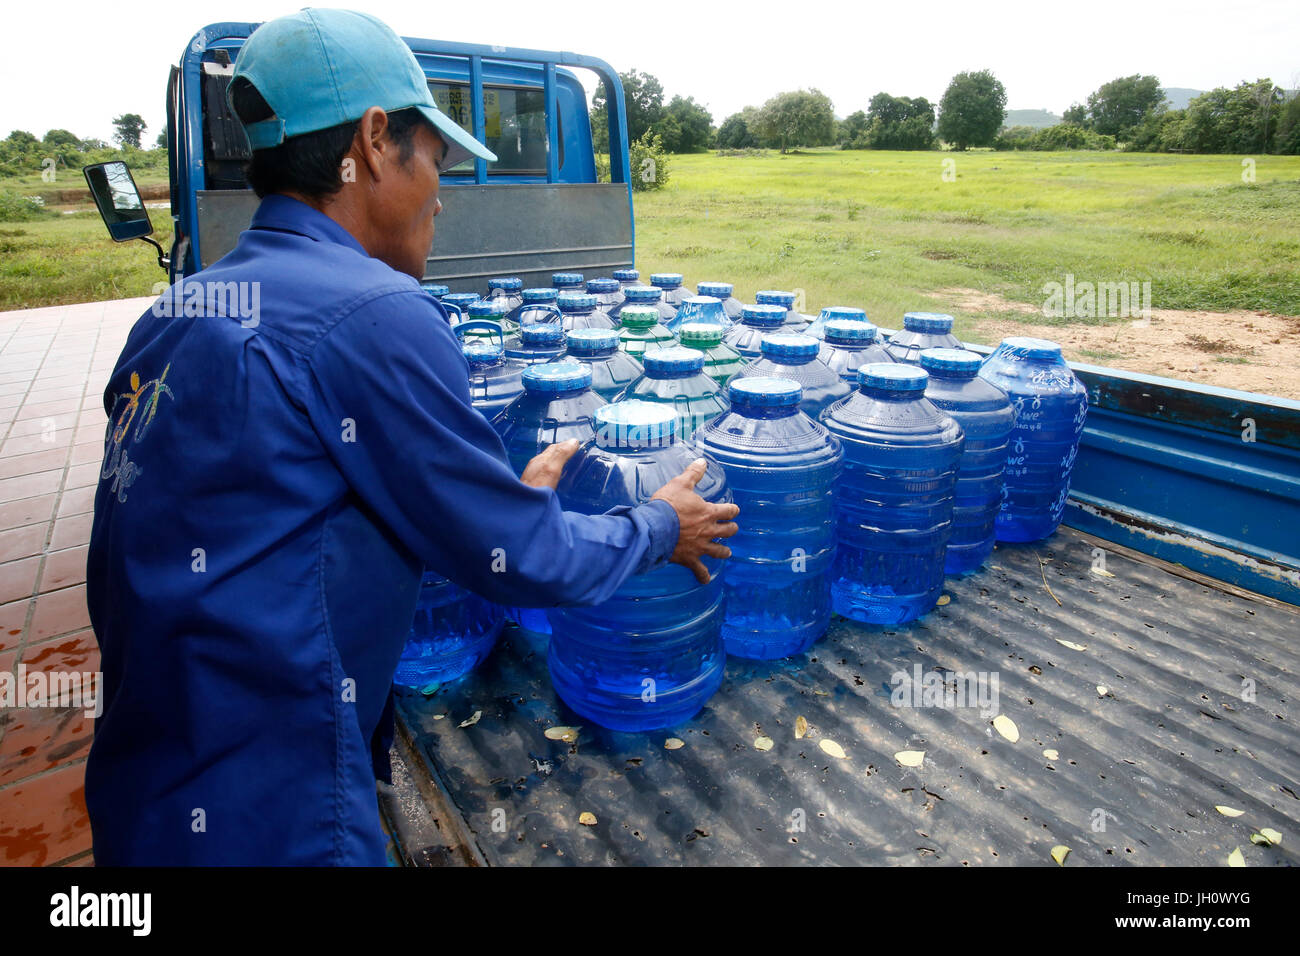 1001 Brunnen Wasser. Mitarbeiter Korbflaschen laden auf einen Lastwagen. Kambodscha. Stockfoto